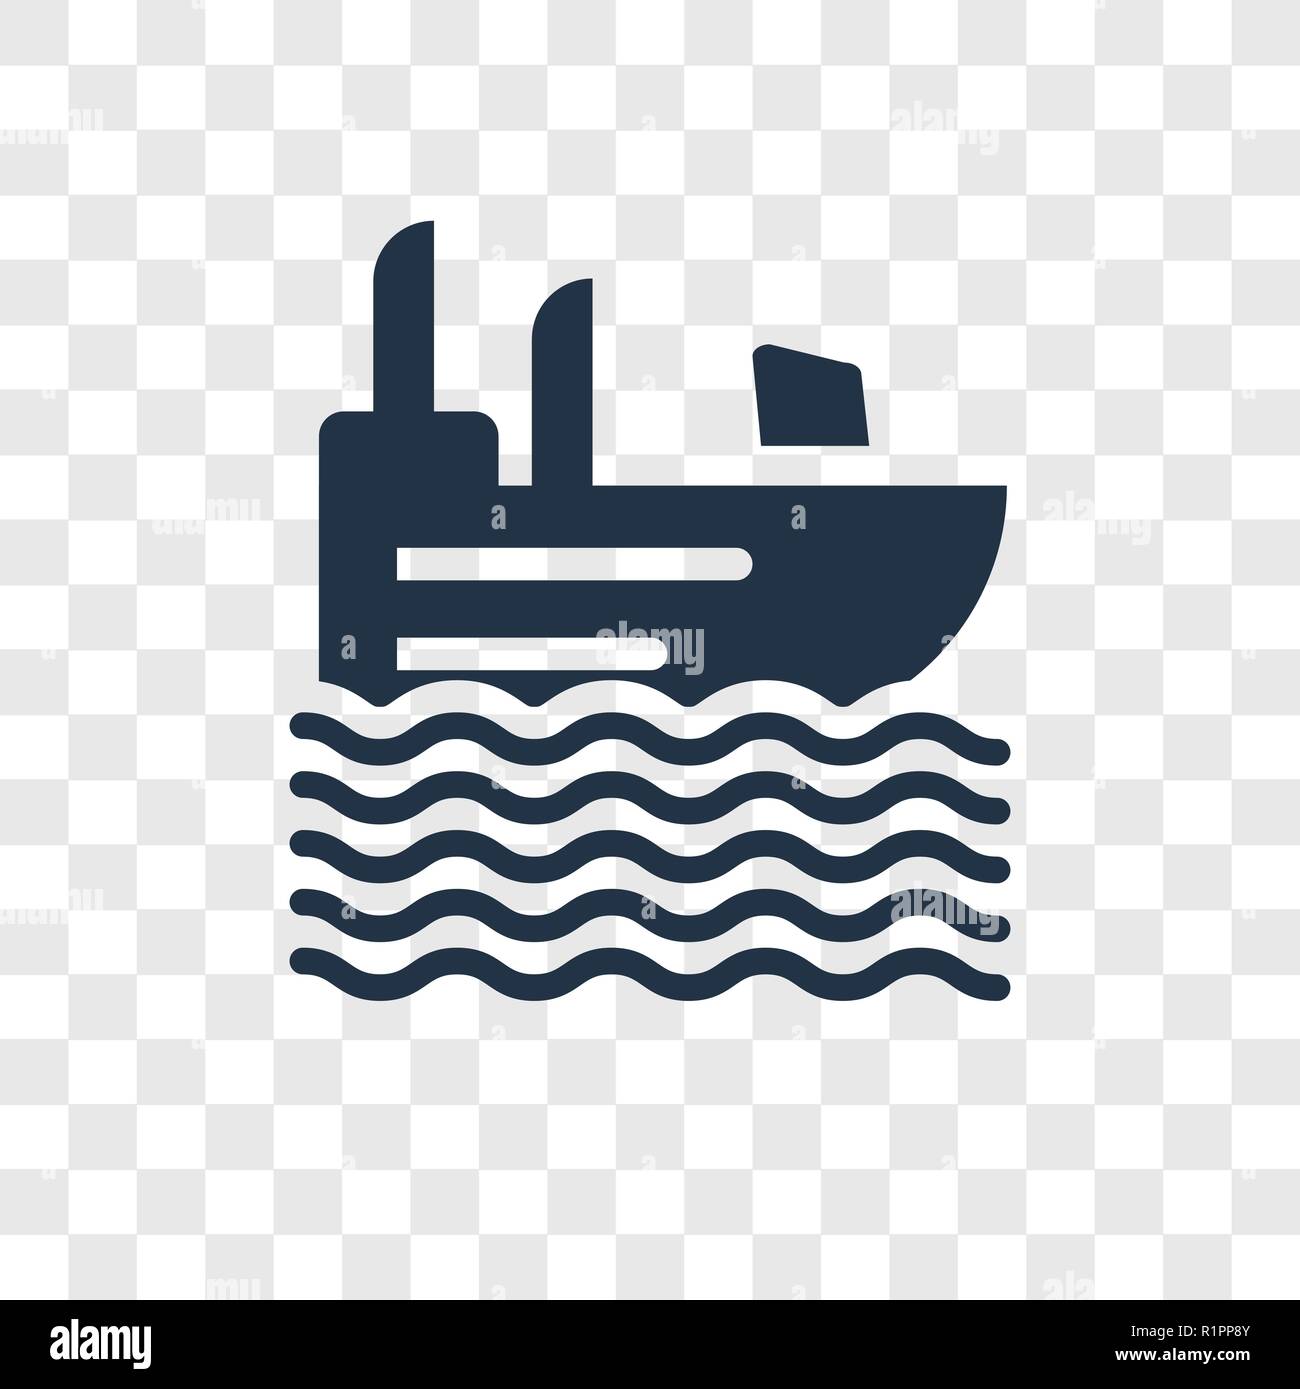 Dachlosen Schnellboot vektor Icon auf transparentem Hintergrund isoliert, Obdachlosen Schnellboot Transparenz logo Konzept Stock Vektor